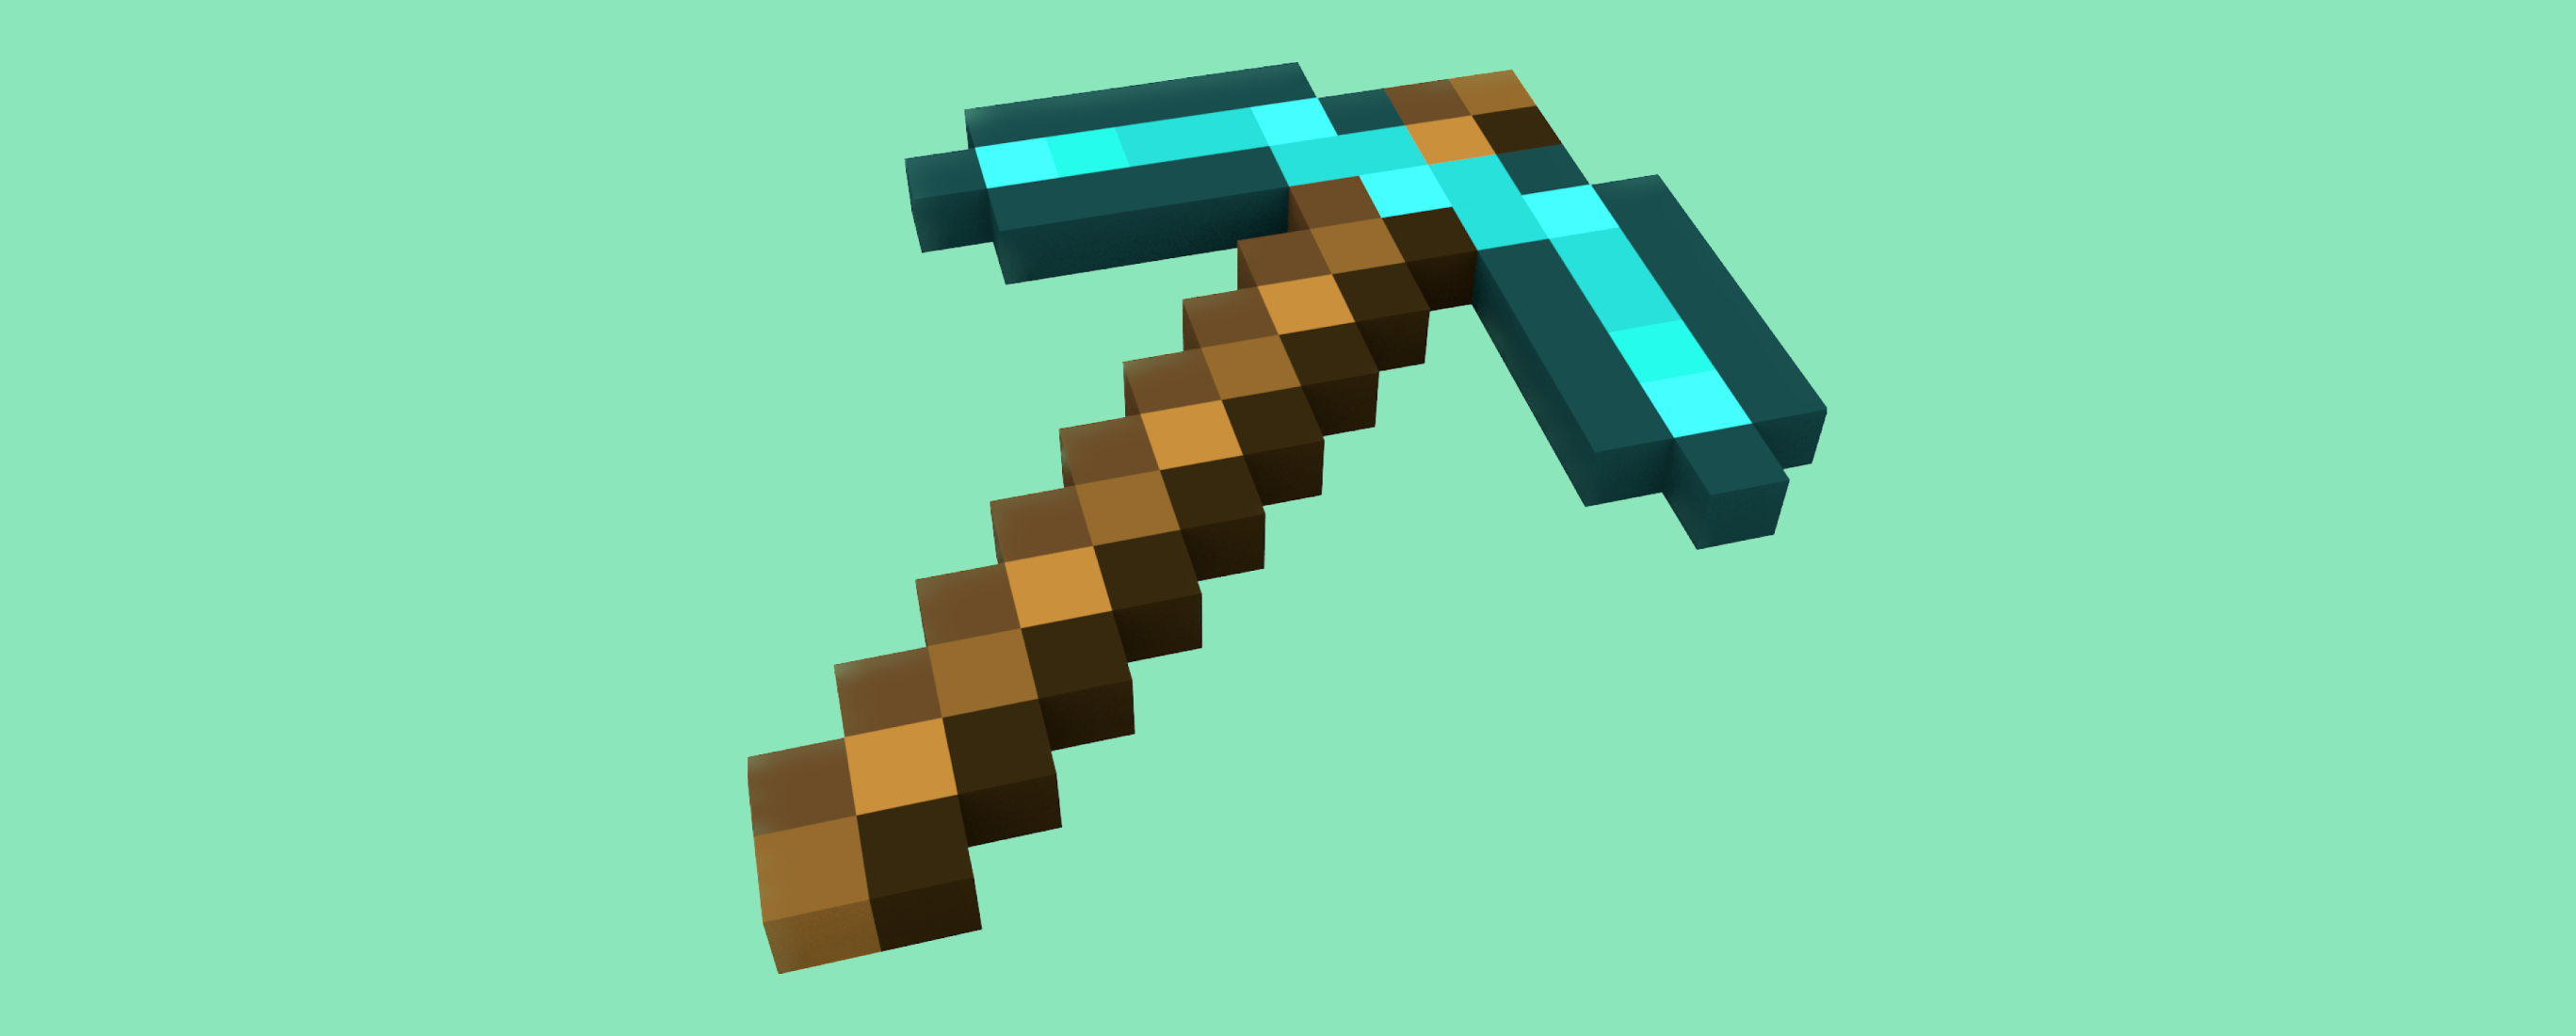 A Minecraft pickaxe.